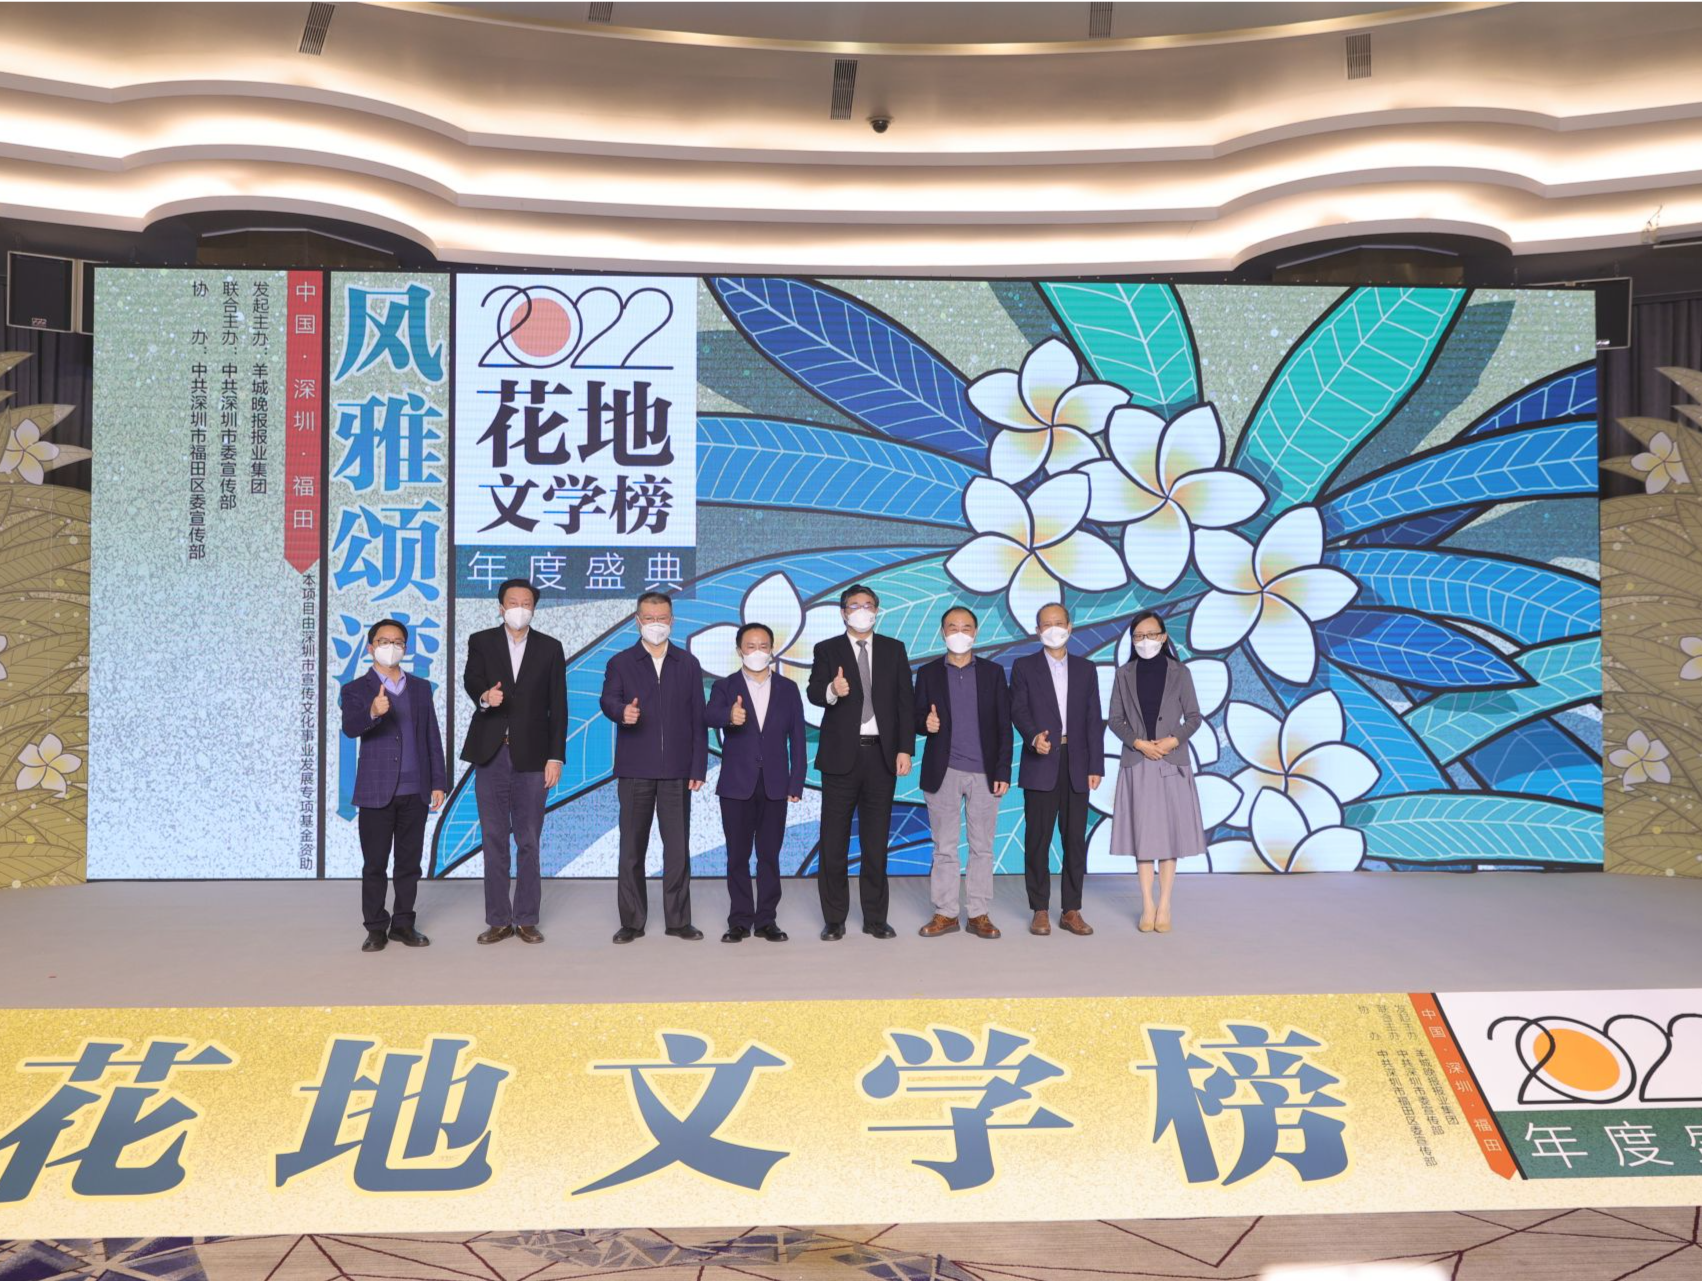 刘震云获选“年度致敬作家” “2022花地文学榜”年度盛典在深举行